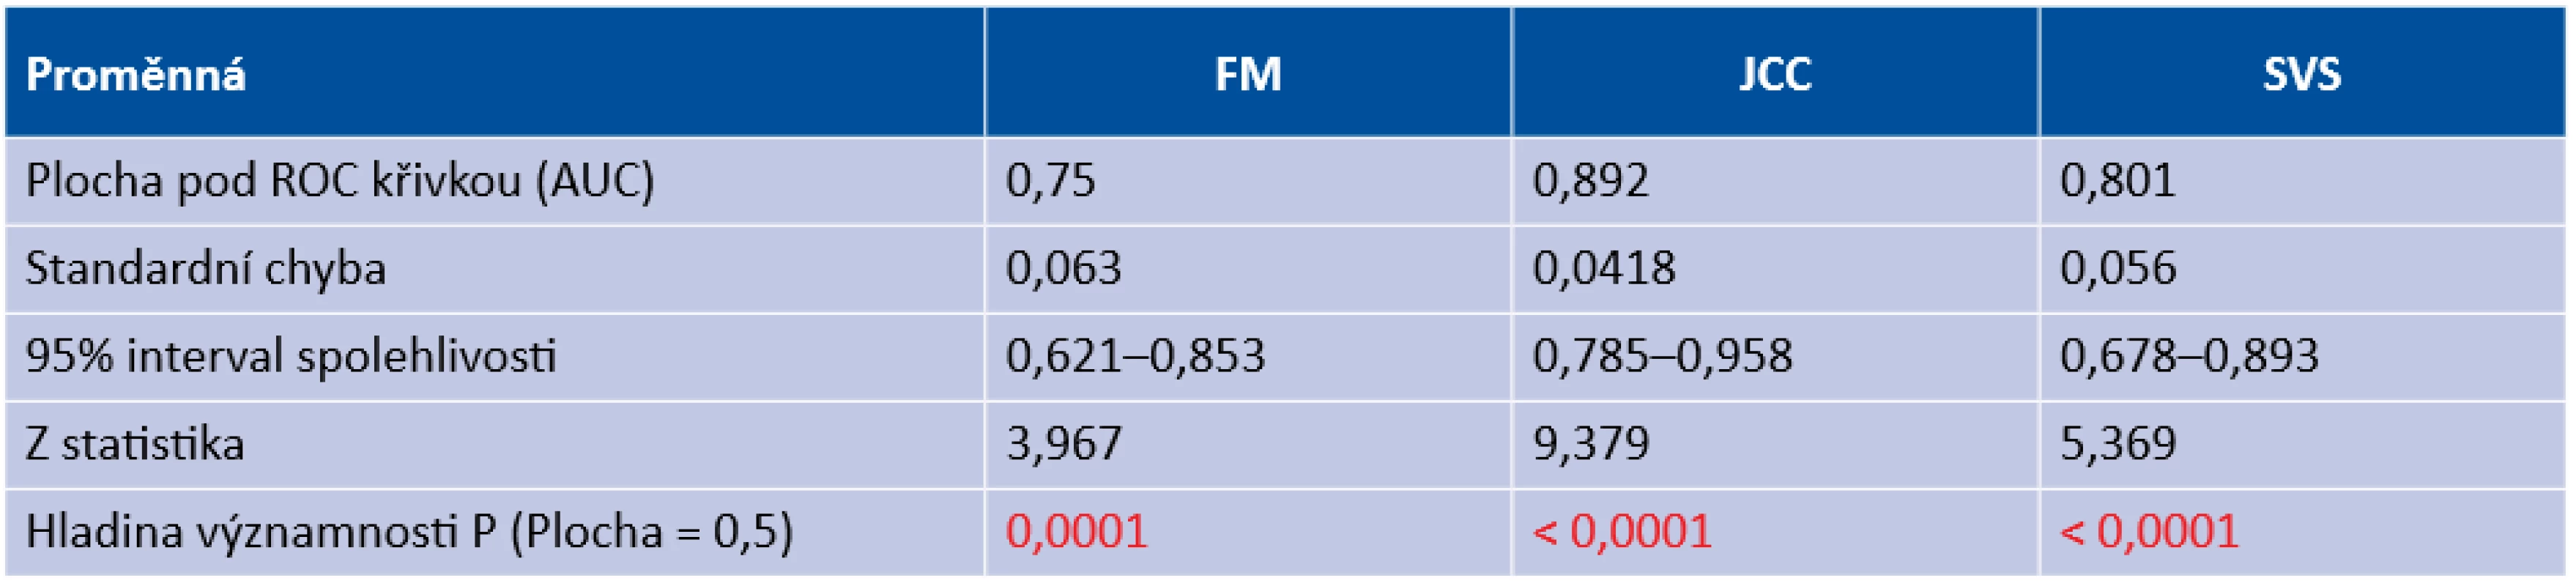 Statistické vyhodnocení senzitivity a specificity u studovaných metod (FM – zamlžovací metoda, JCC – metoda zkřížených cylindrů, SVS – Spot Vision Screener) Proměnná FM 